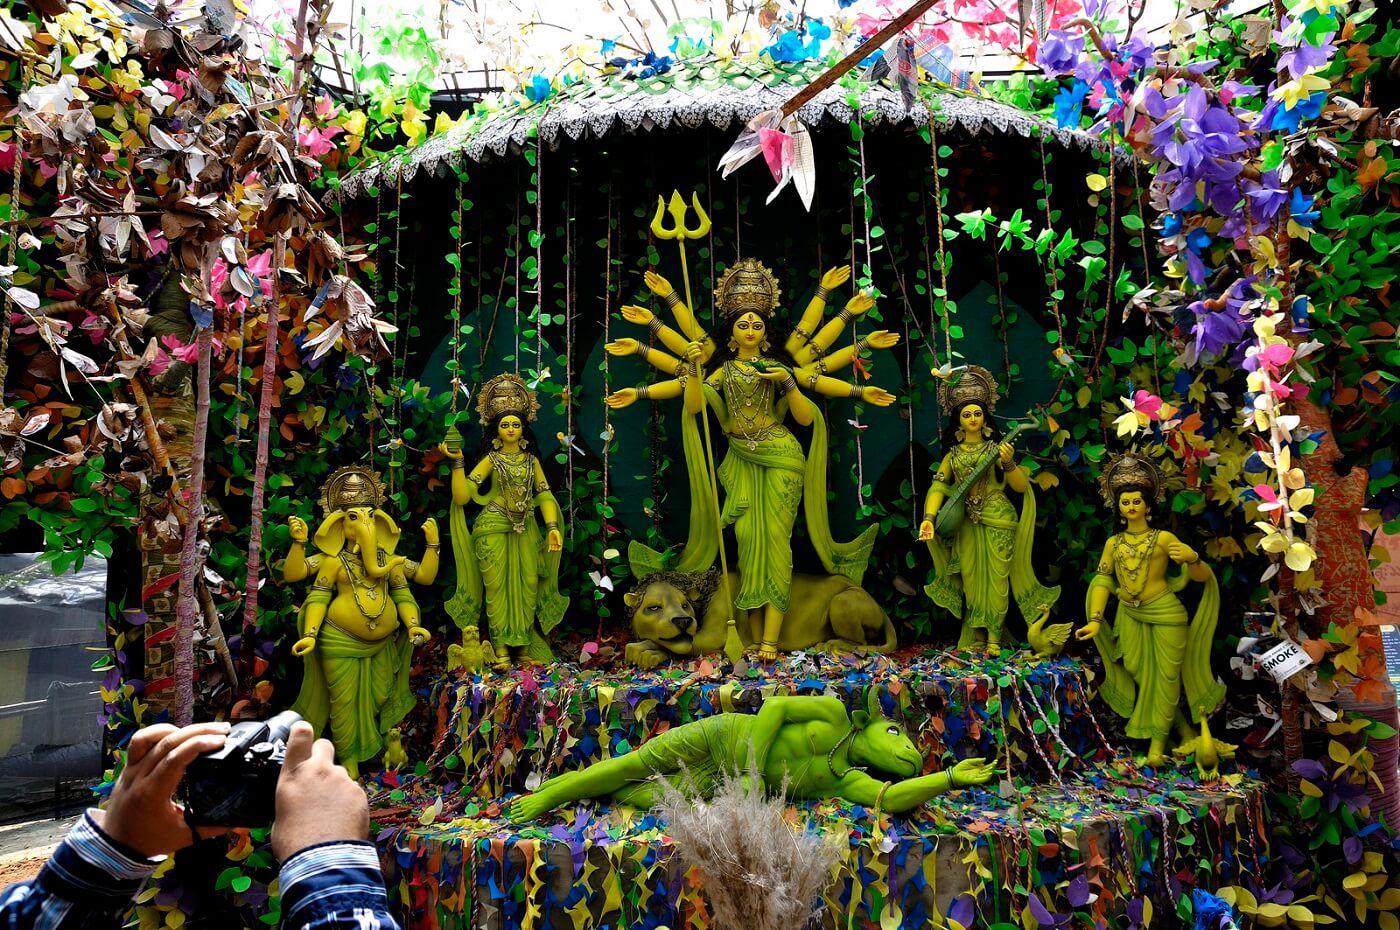 Assam Durga Puja